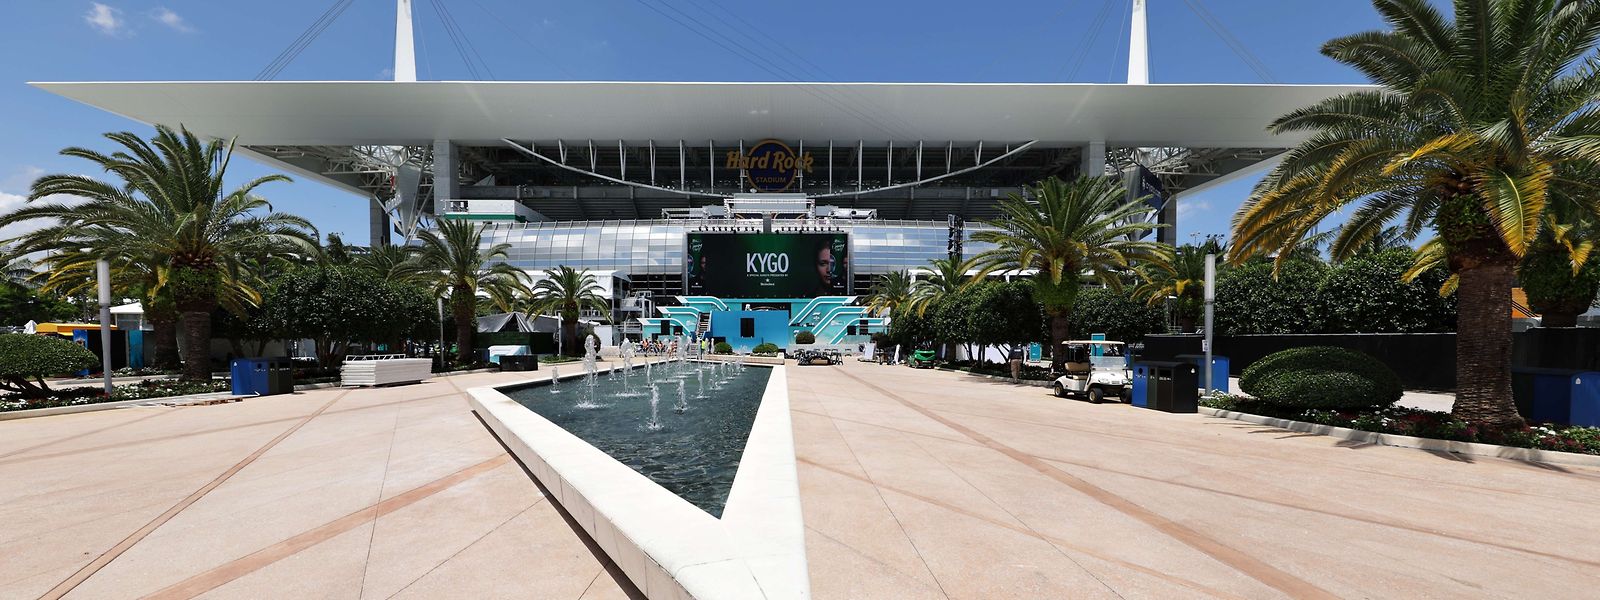 Die neue Strecke in Miami wurde rund um das Hard Rock Stadium gebaut.